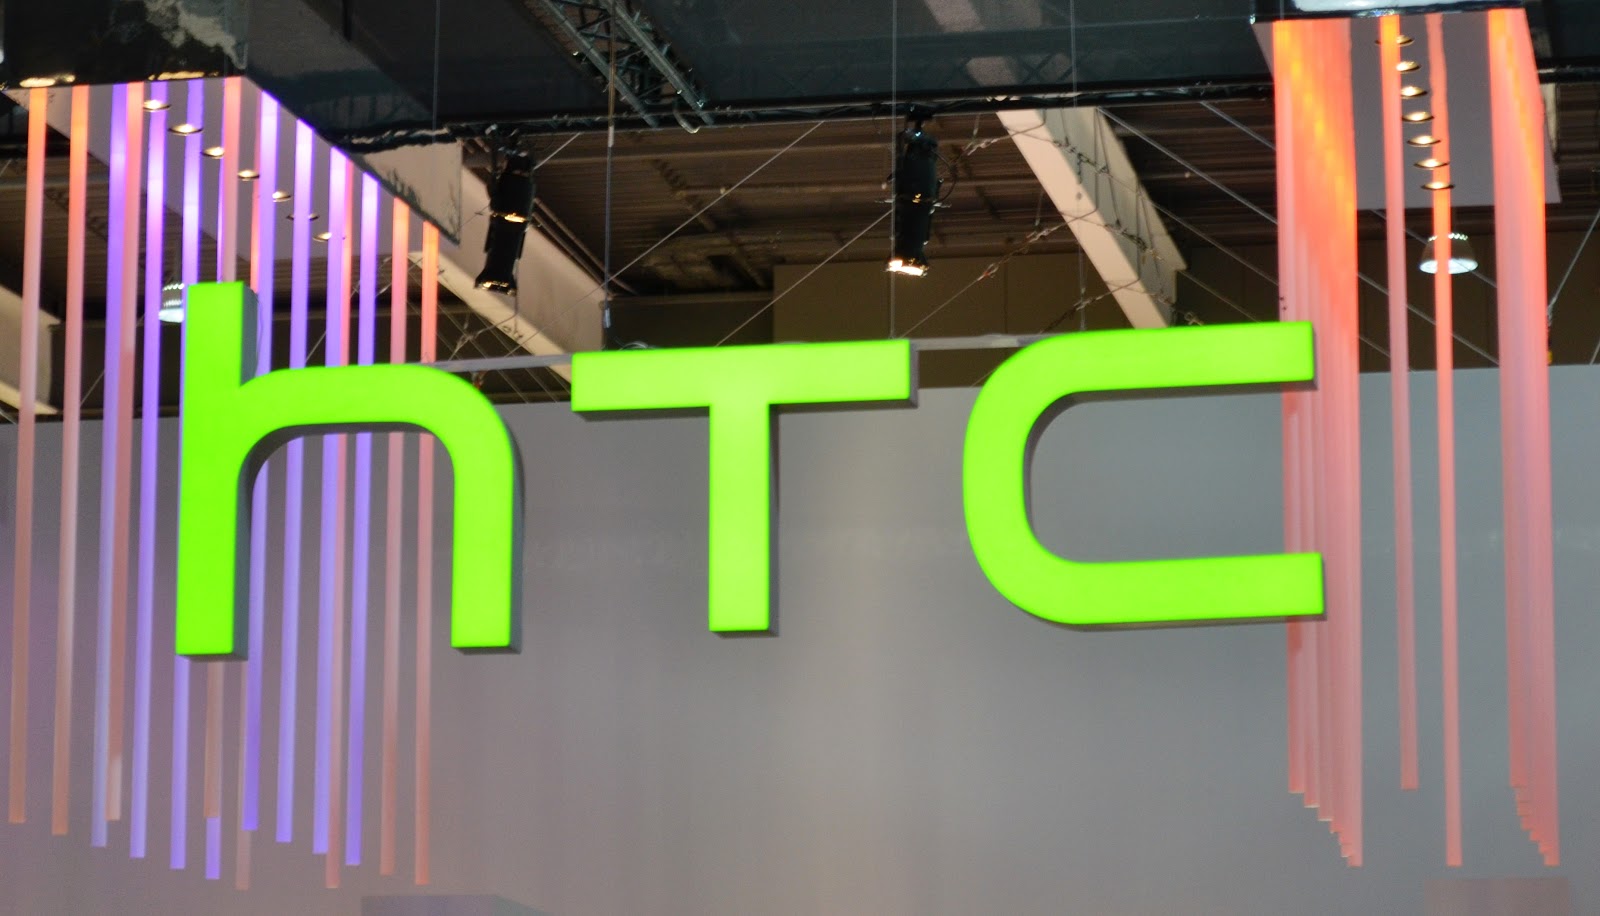 HTC a reușit ca în luna octombrie sa înregistreze venituri în valoare de 276.8 milioane dolari, cifra cu 25.92% mai mare fața de luna precedenta